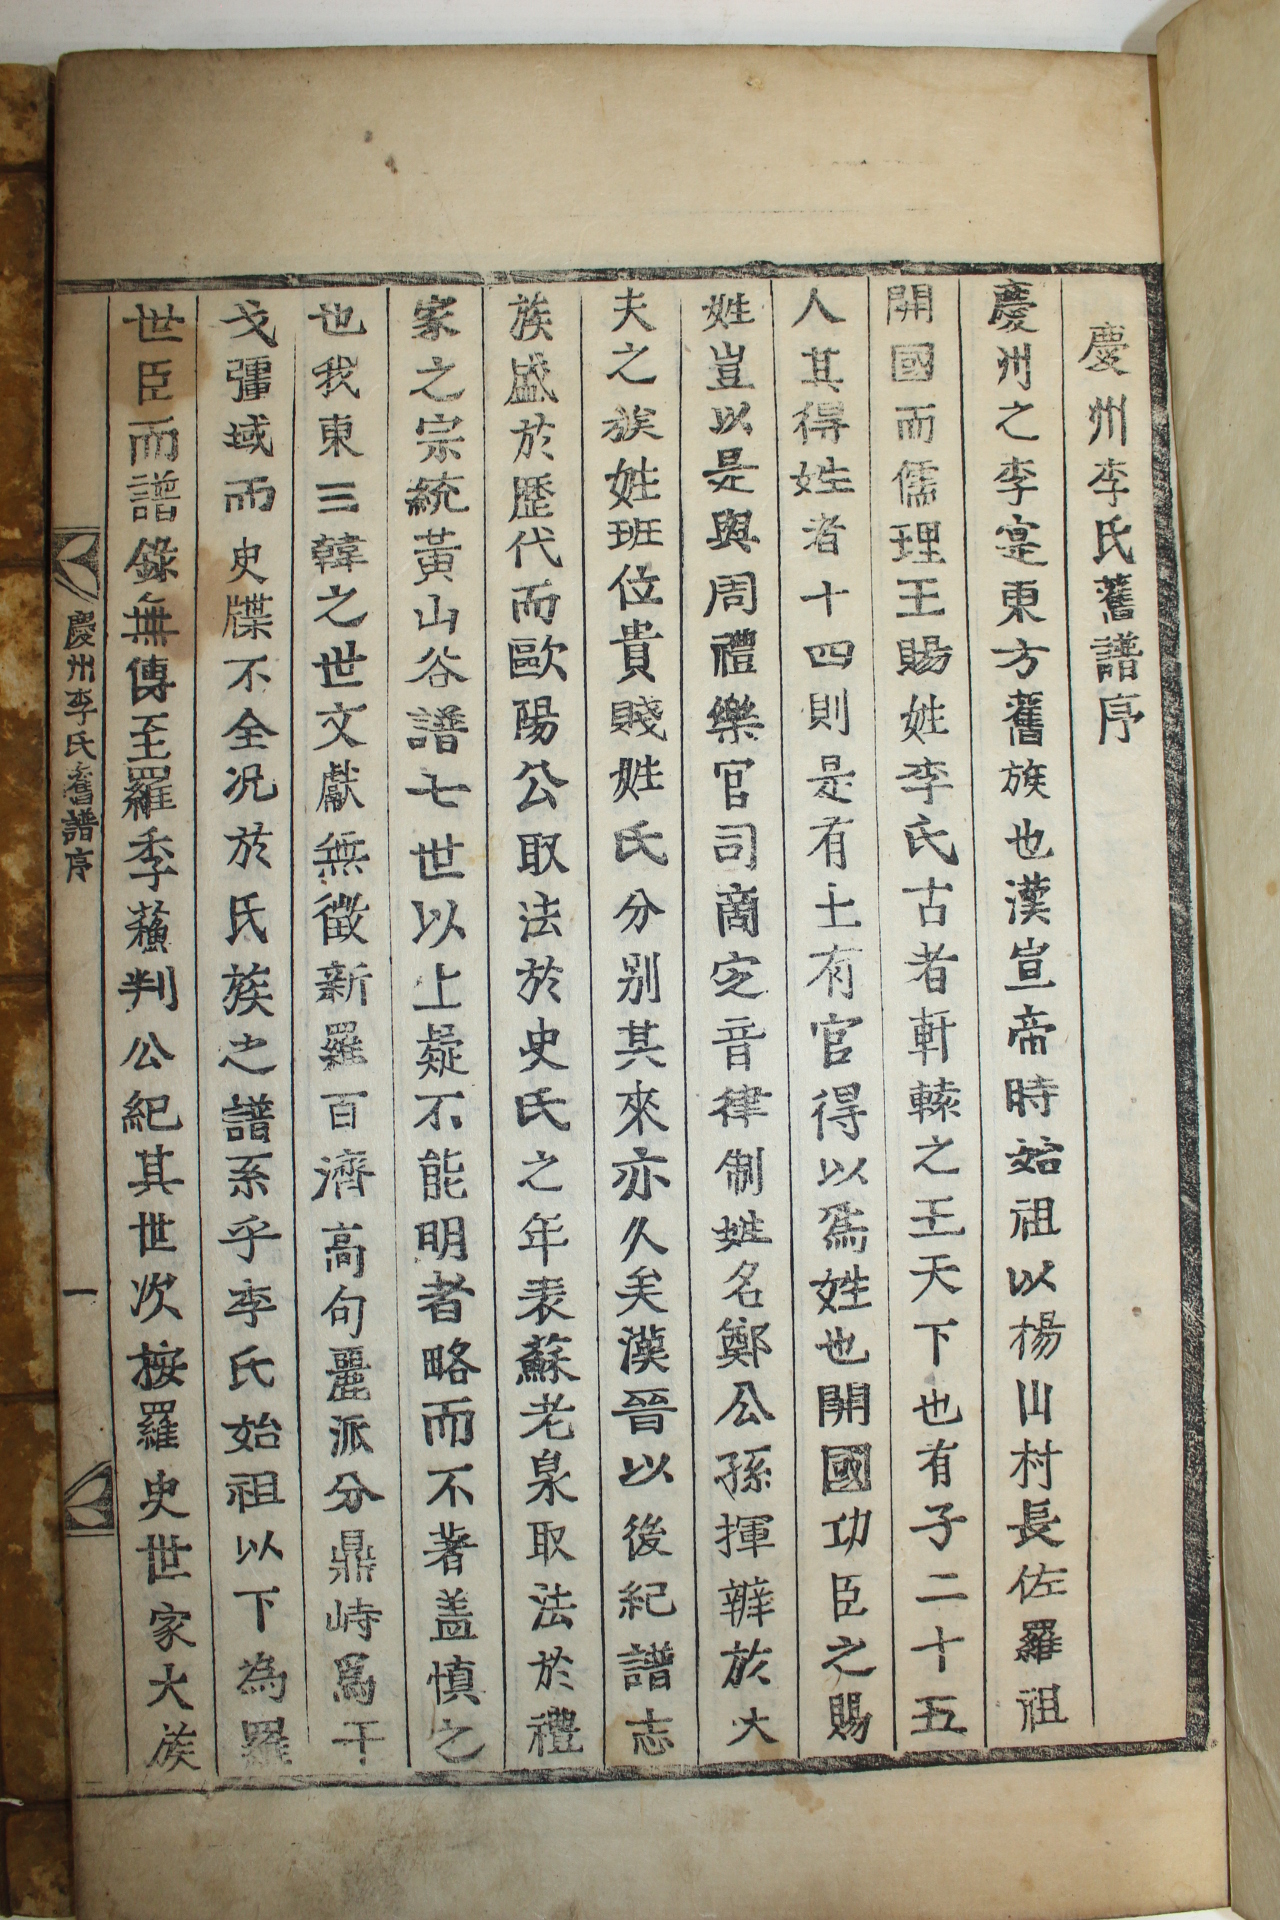 1873년 경주이씨국당공파보(慶州李氏菊堂公派譜) 2책